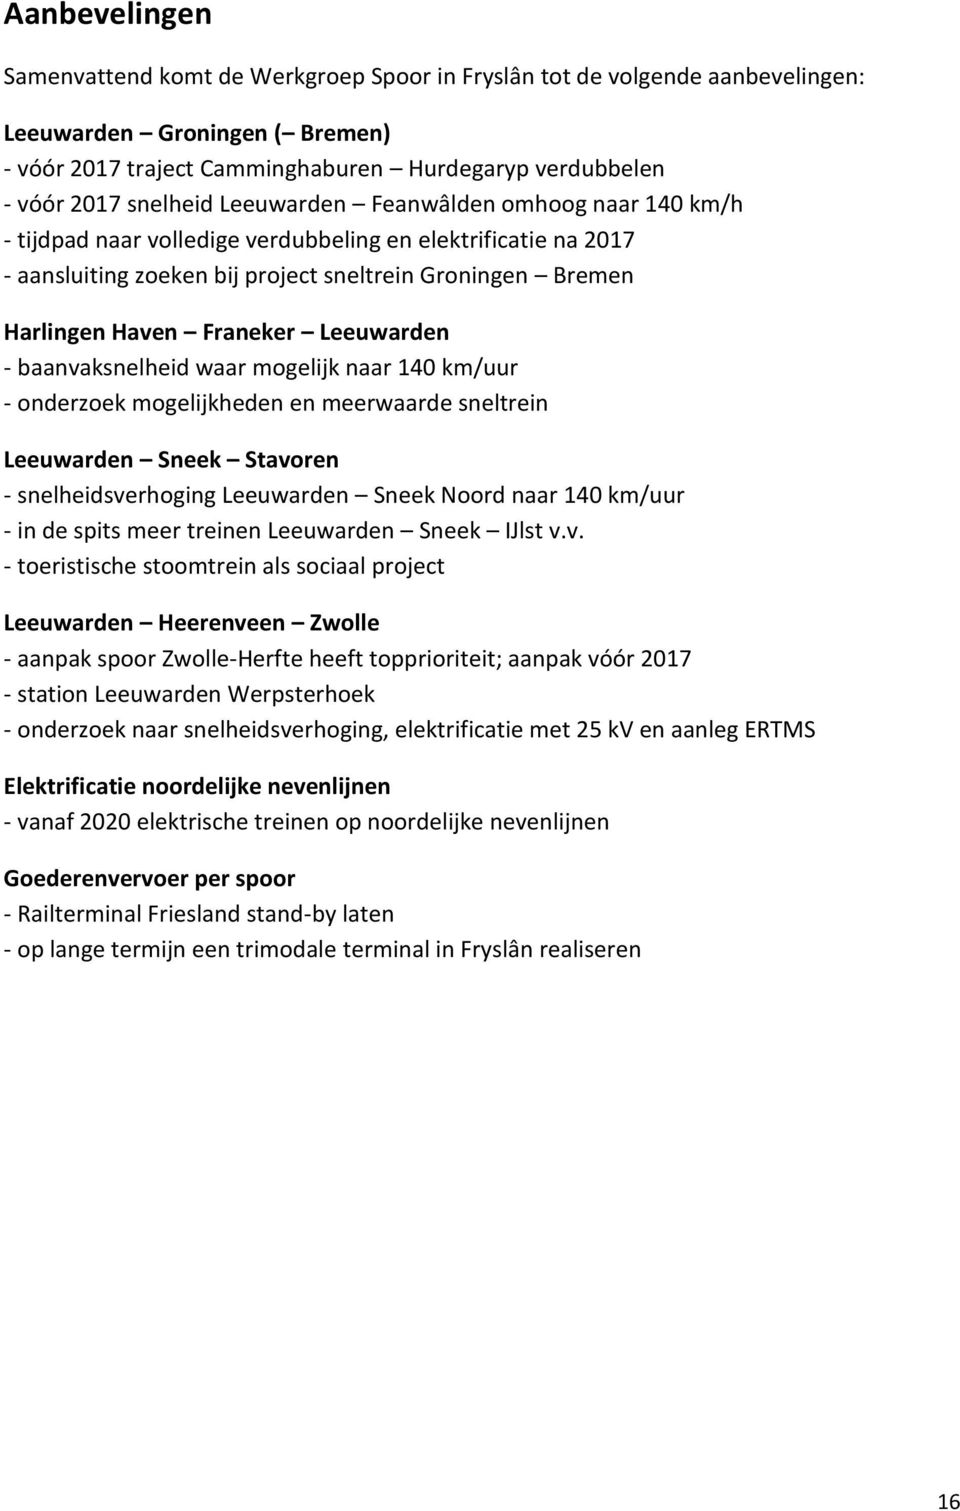 Franeker Leeuwarden - baanvaksnelheid waar mogelijk naar 140 km/uur - onderzoek mogelijkheden en meerwaarde sneltrein Leeuwarden Sneek Stavoren - snelheidsverhoging Leeuwarden Sneek Noord naar 140